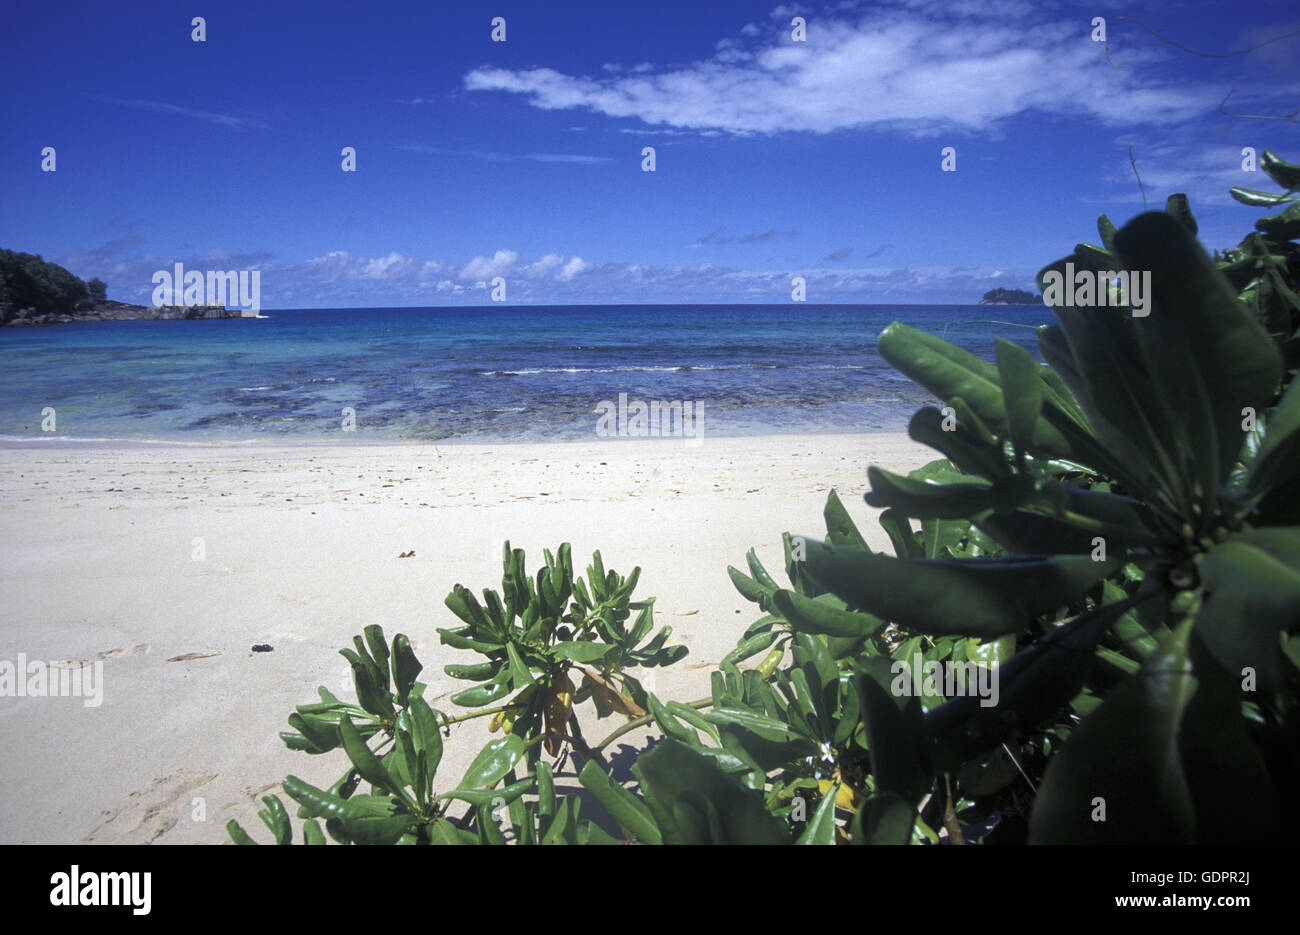 Die Landschaft auf der Insel Mahe auf den Seychellen im Indischen Ozean. Foto Stock